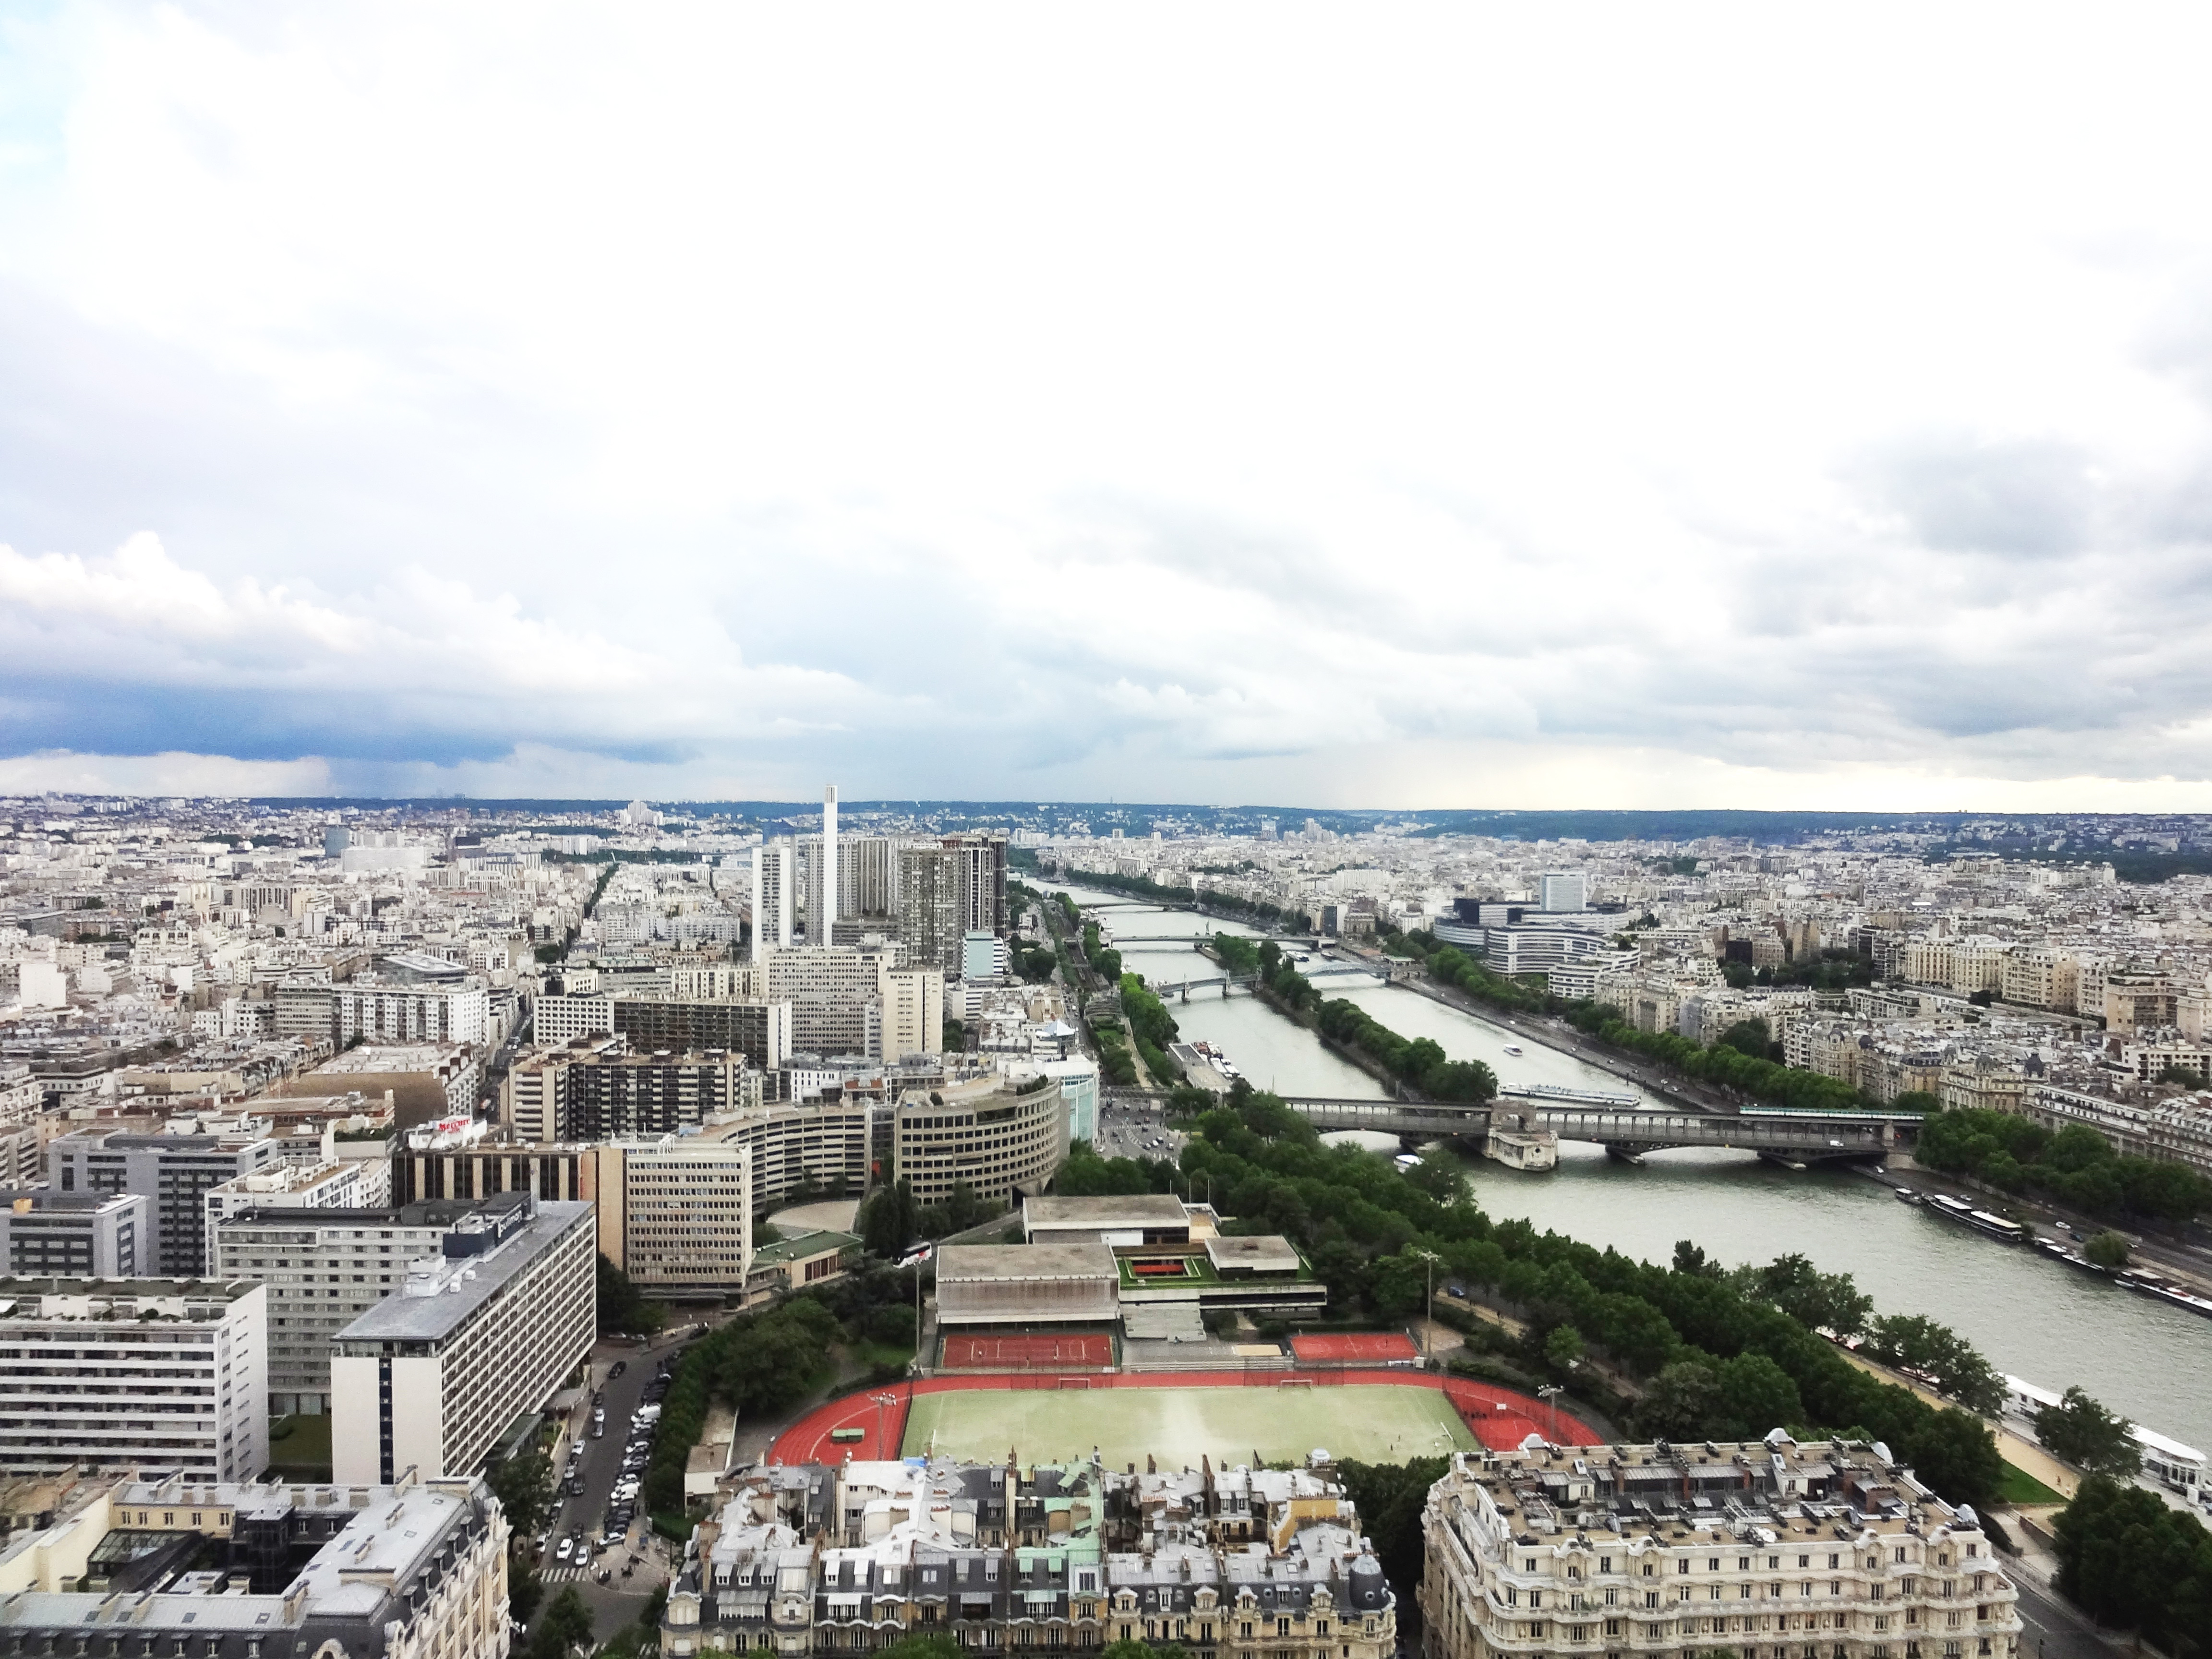 Vista panorâmica de Paris em dia nublado: muitos prédios de tamanhos variados, um rio corta a cidade e suas margens são arborizadas.